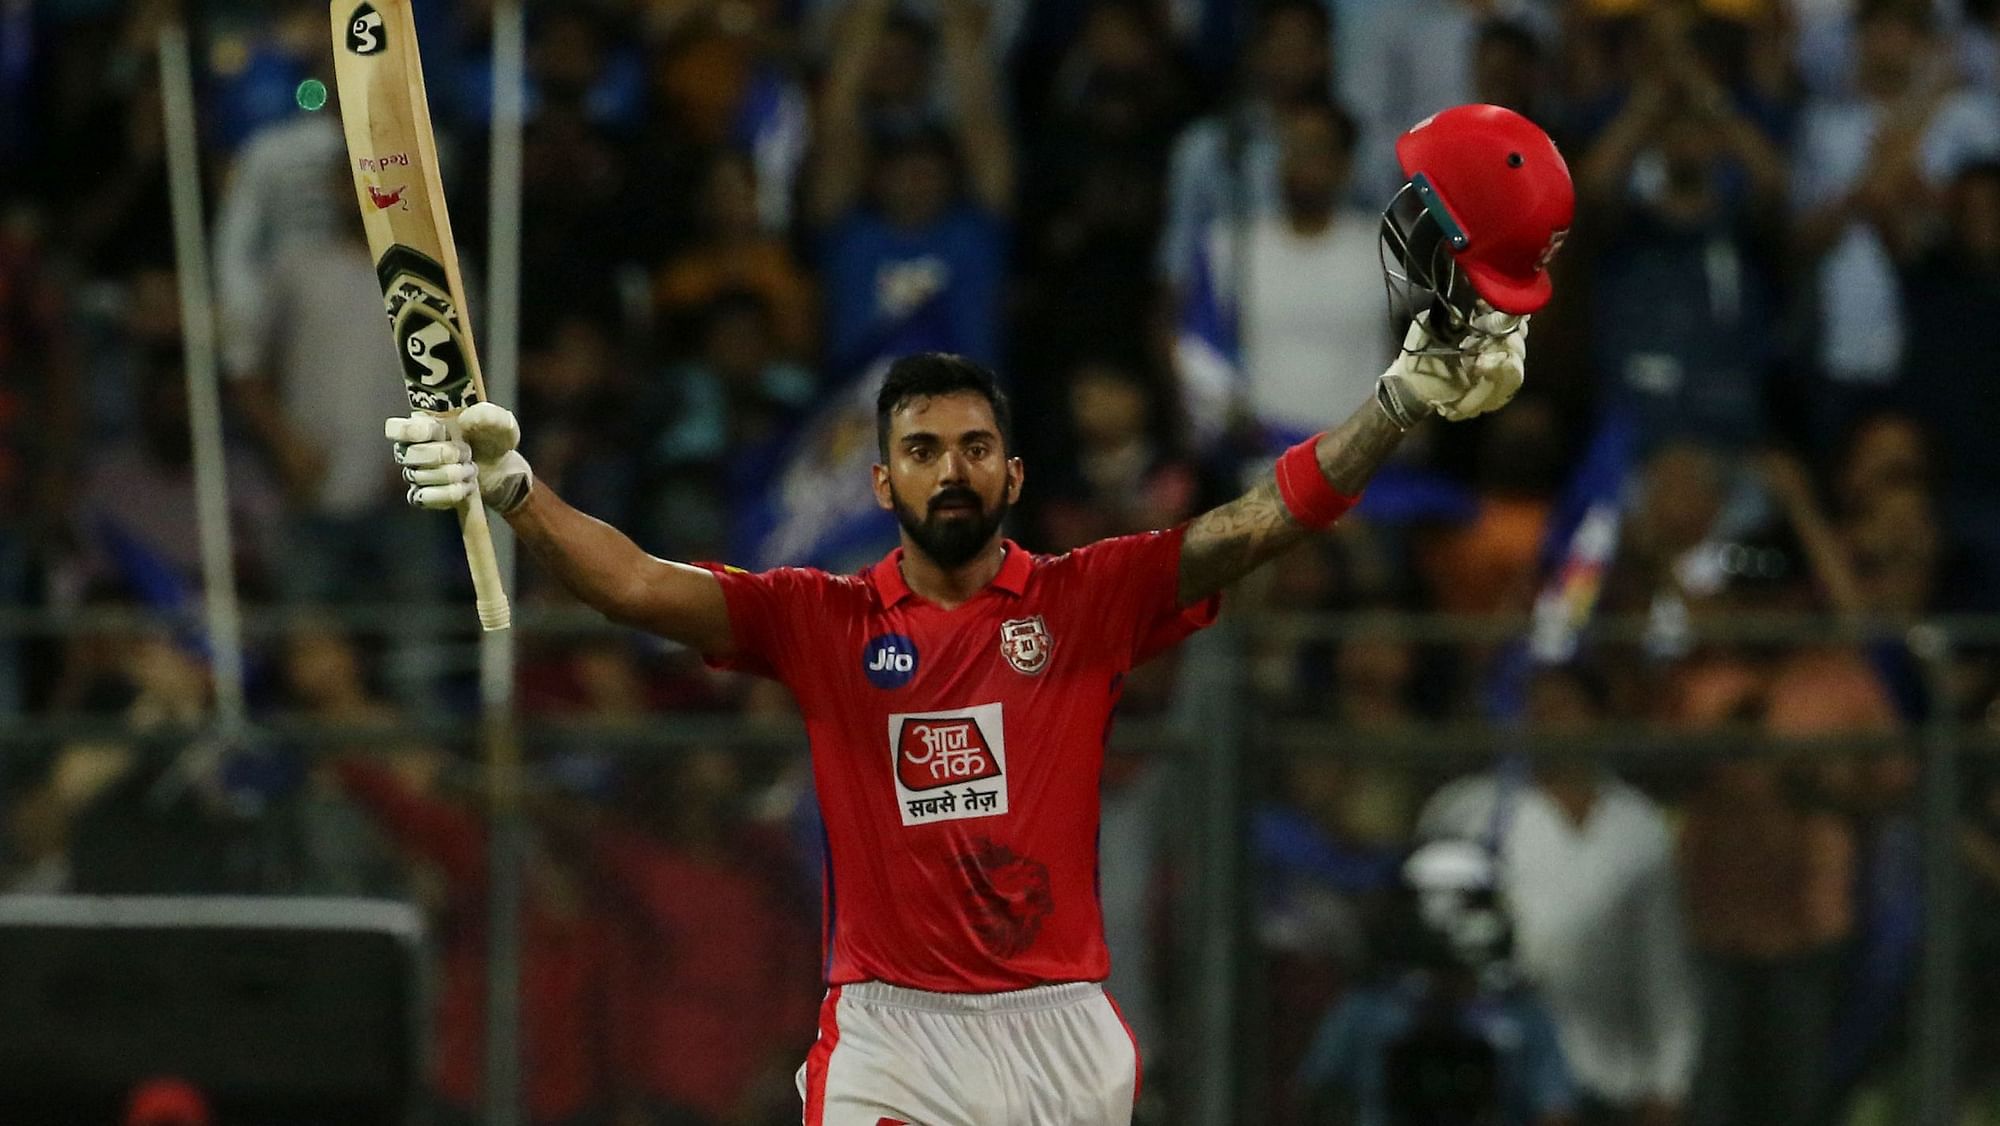 KL Rahul scored his maiden IPL century against Mumbai Indians on Wednesday night.